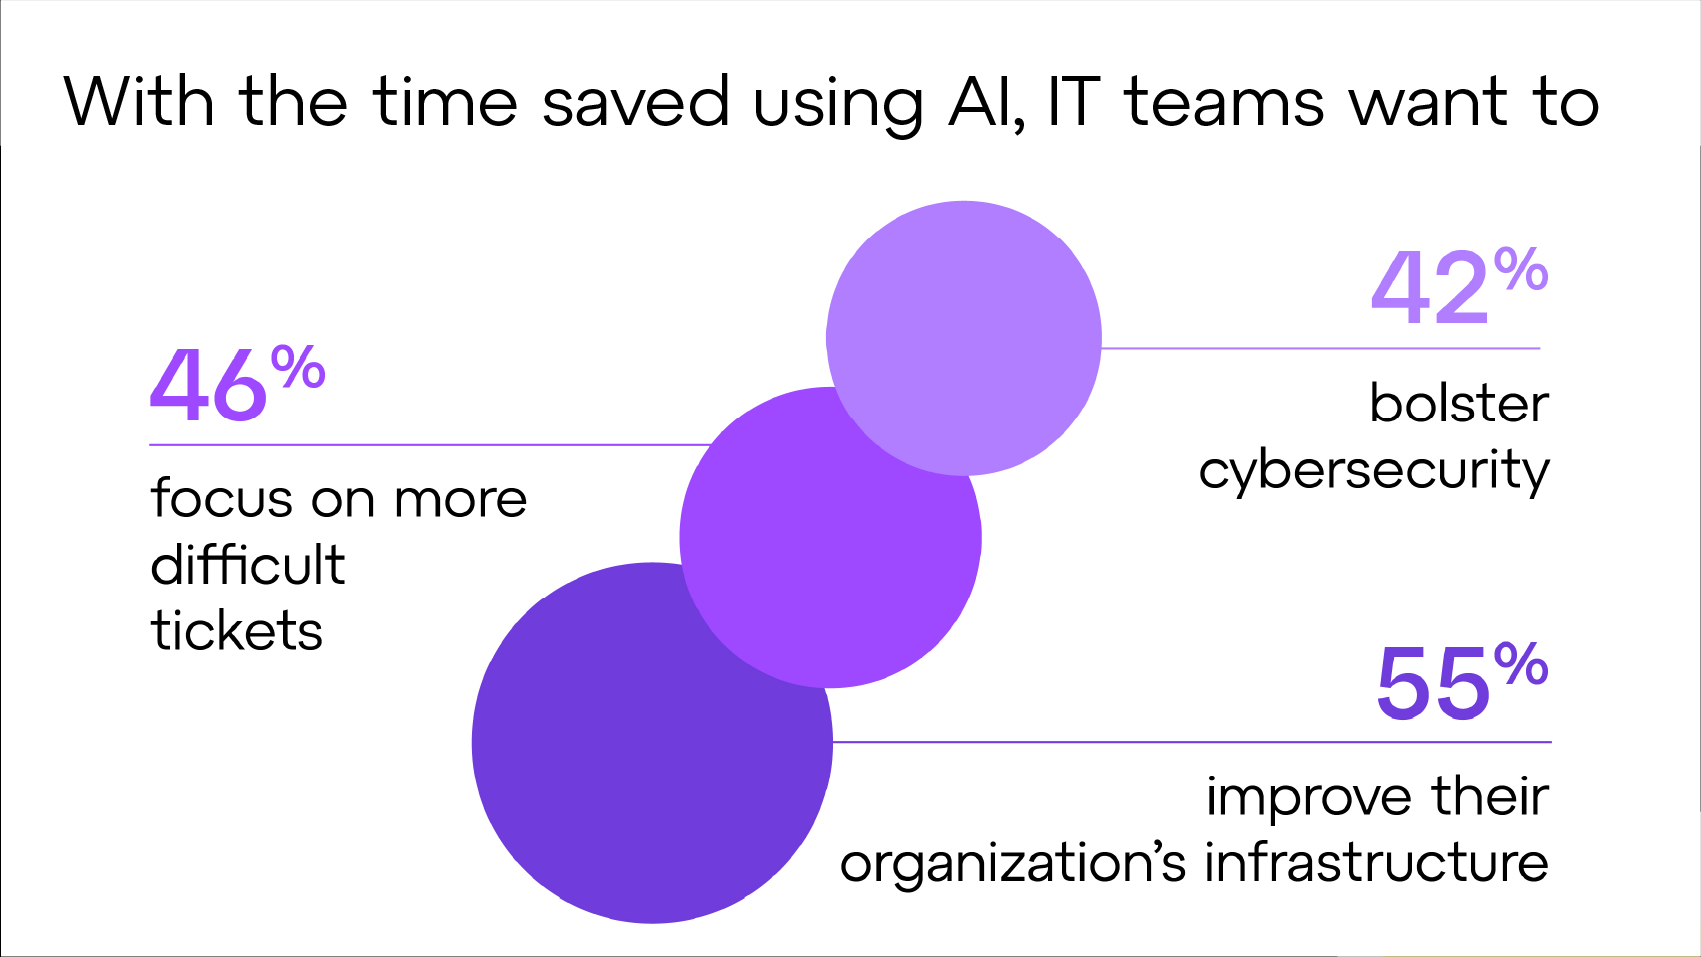 Con il tempo risparmiato utilizzando l'IA, i team IT desiderano concentrarsi su richieste di supporto più difficili, rafforzare la sicurezza informatica e migliorare l'infrastruttura dell'organizzazione.